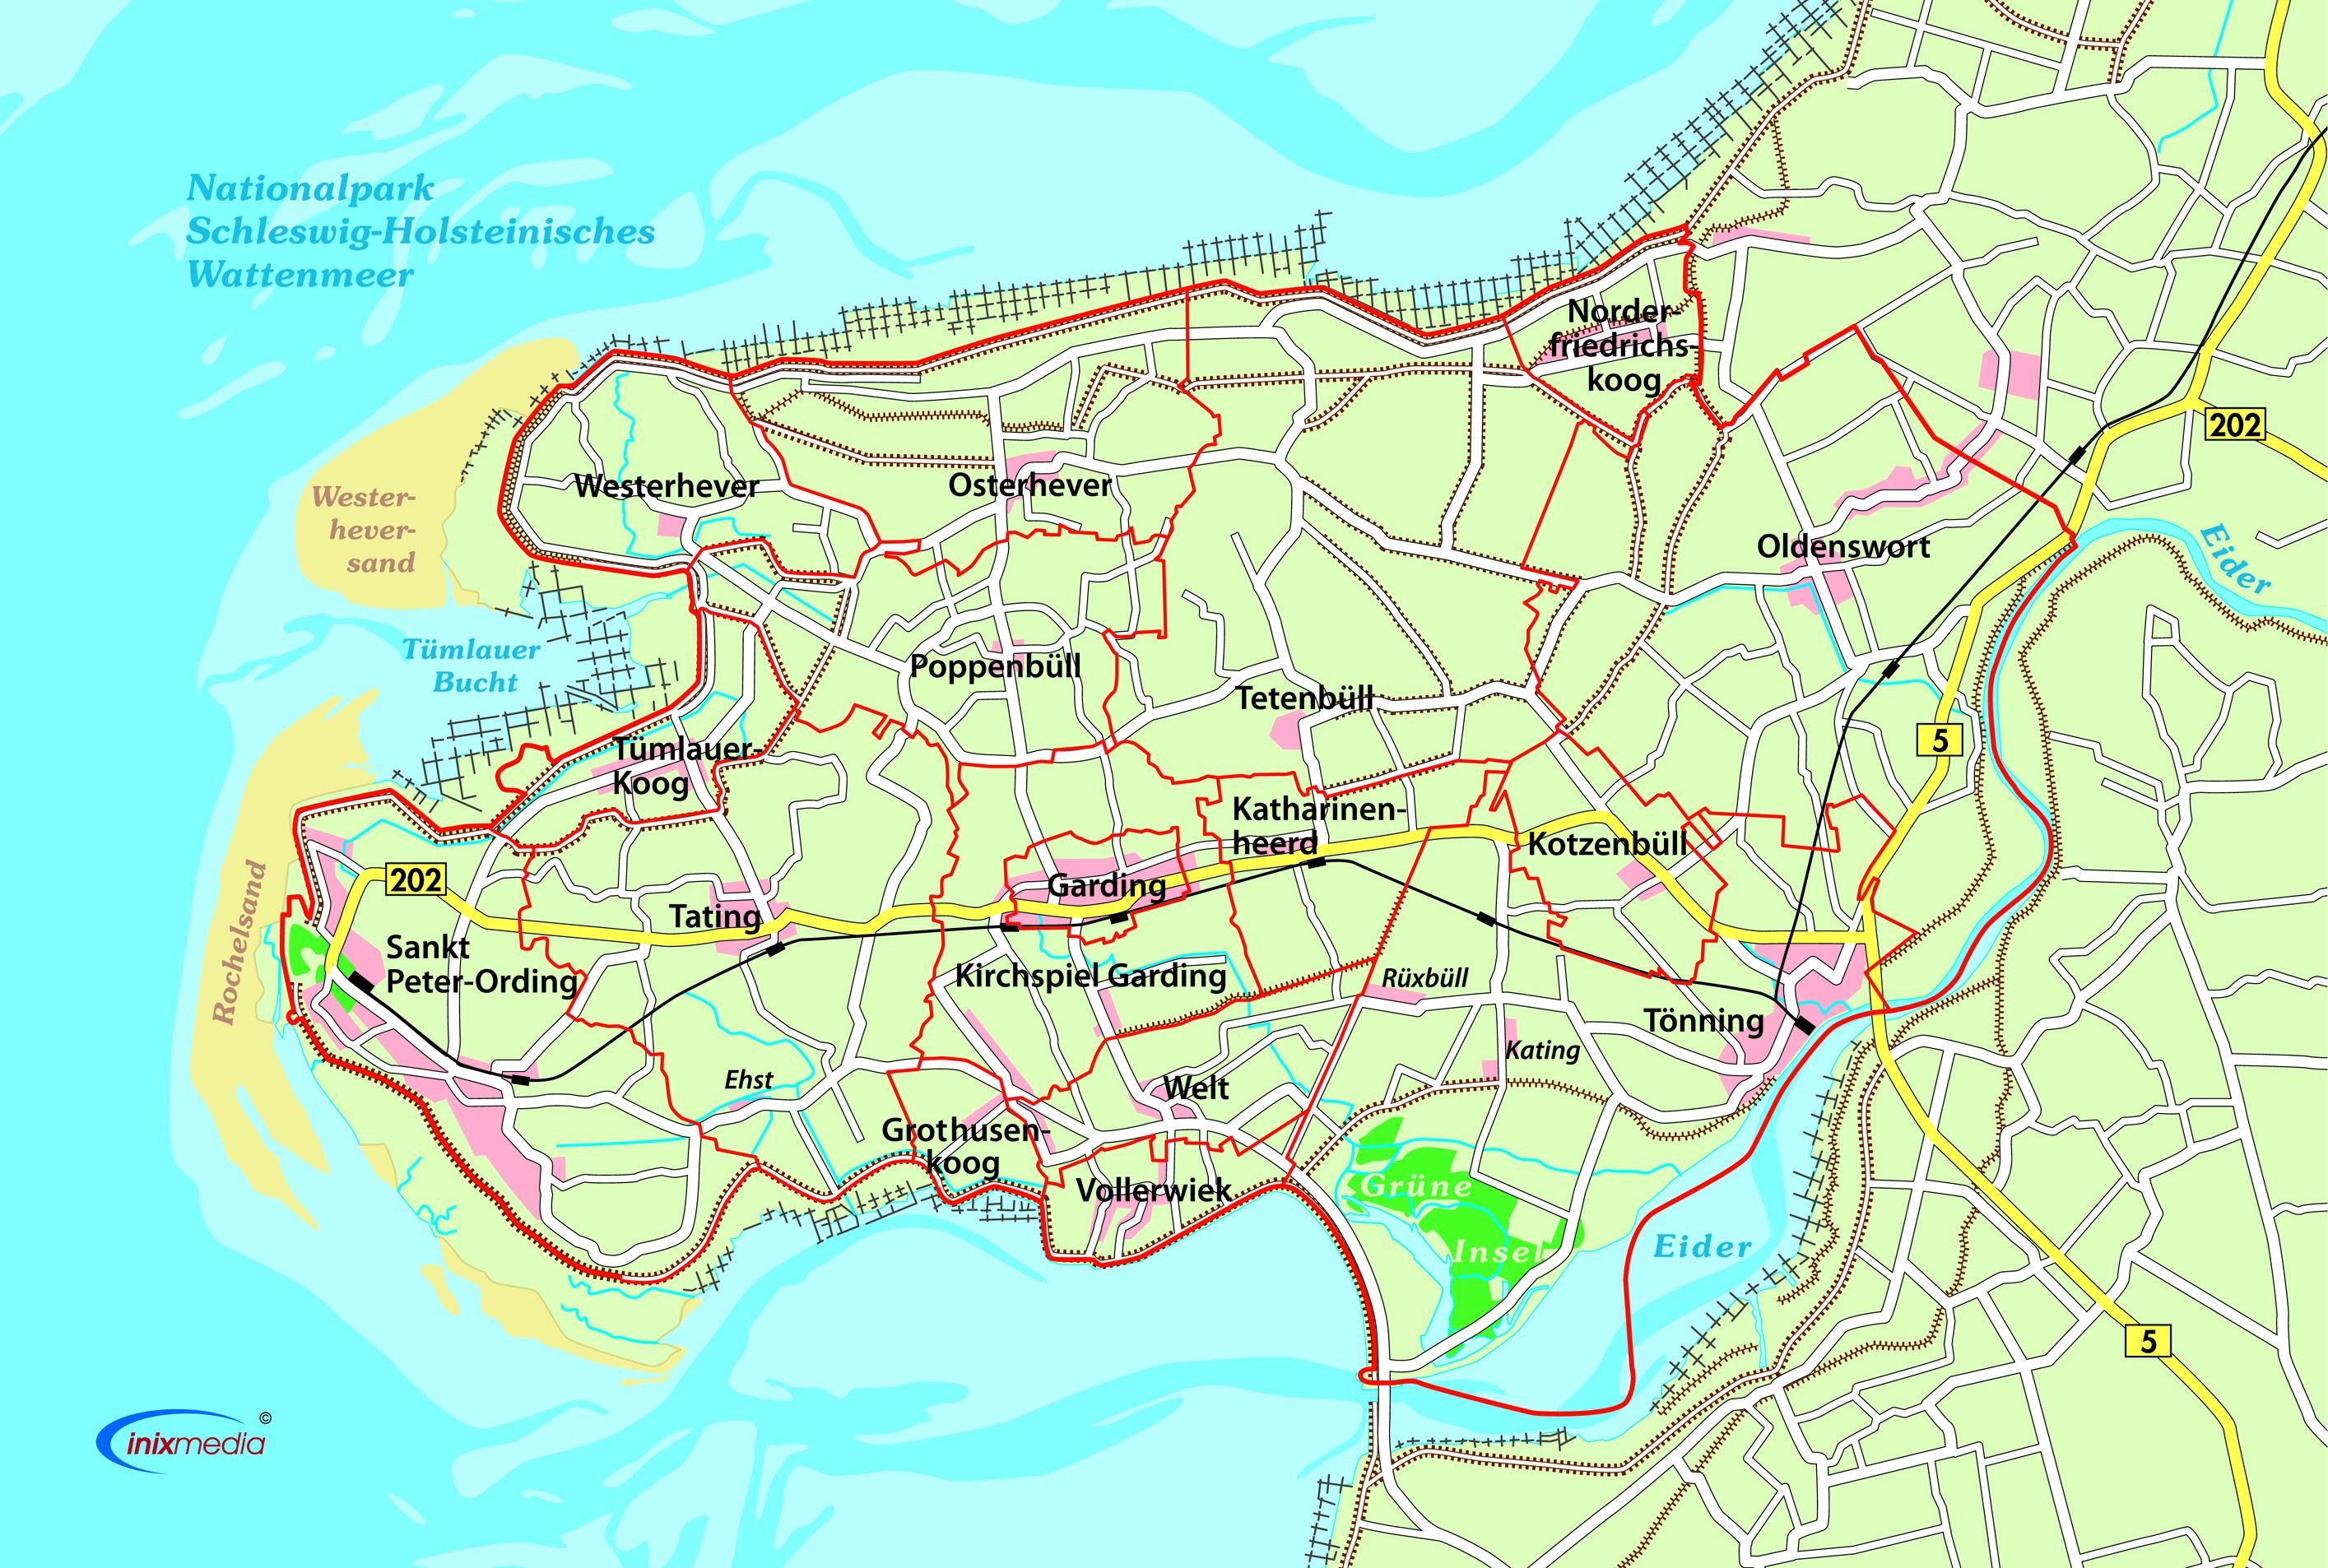 Bild vergrößern: Karte der Halbinsel Eiderstedt